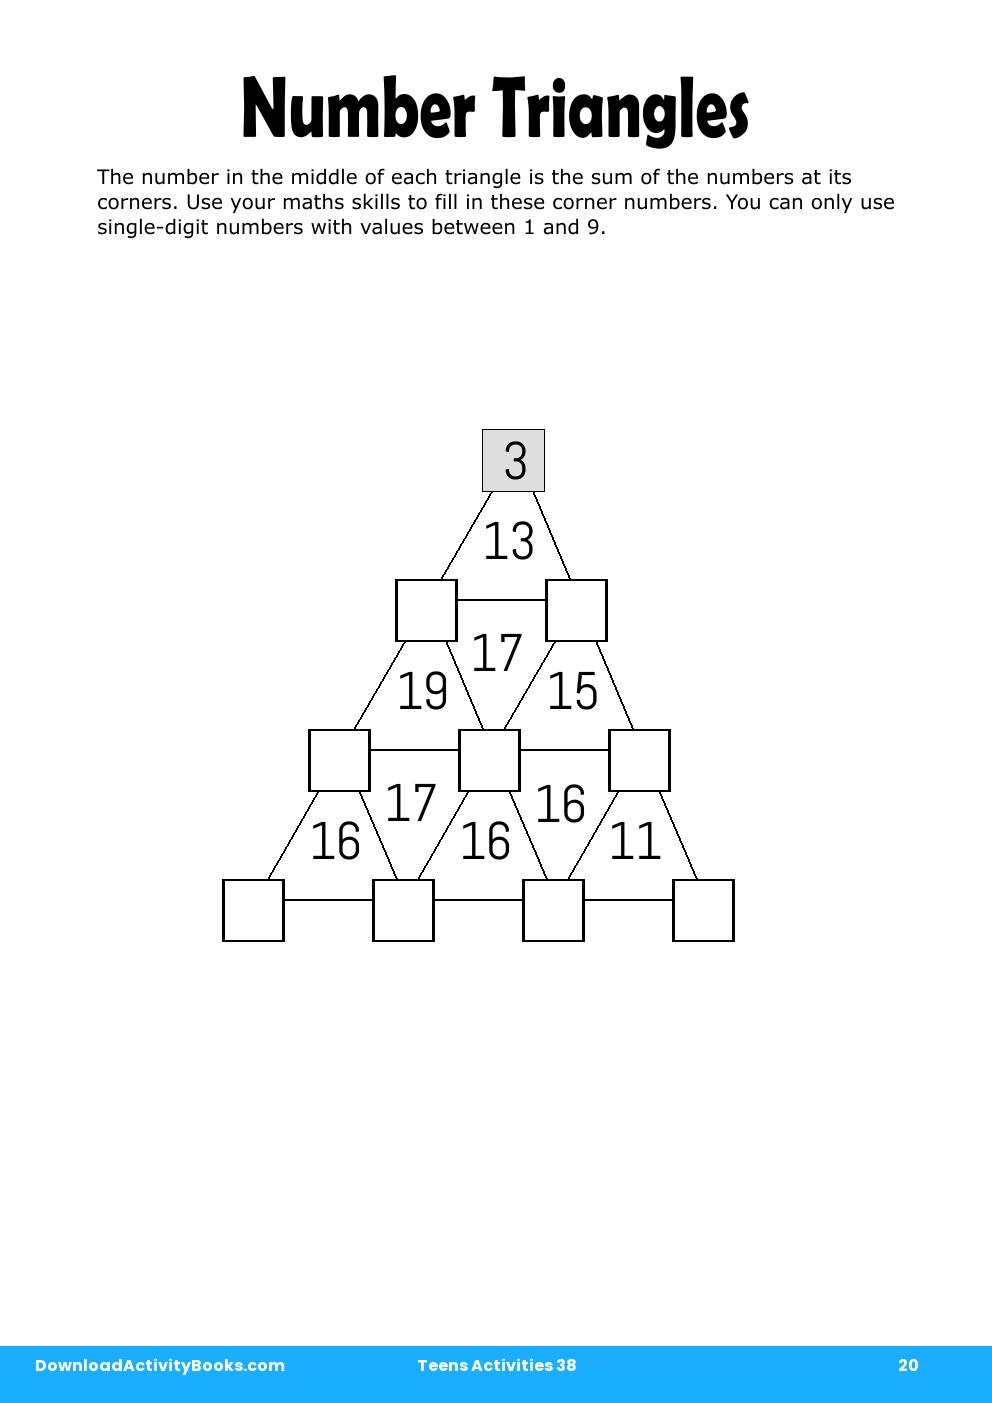 Number Triangles in Teens Activities 38